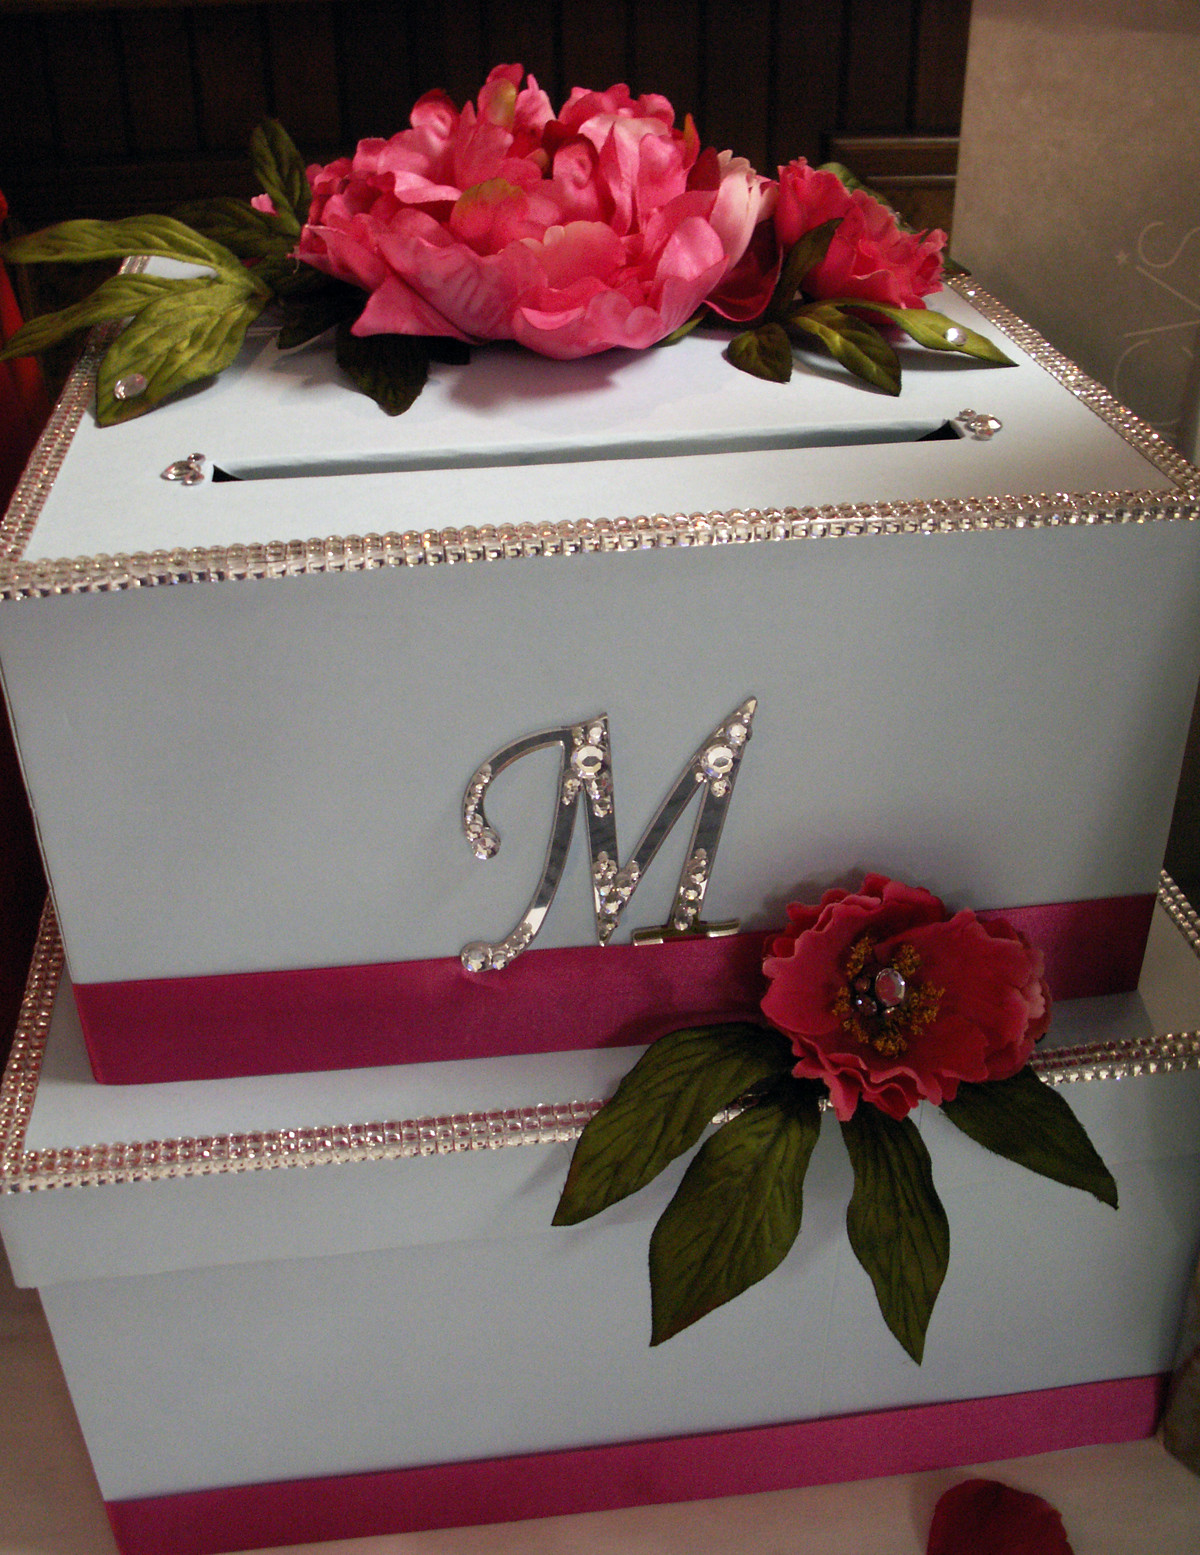 DIY Card Box For Wedding
 DIY Wedding Card Box Project